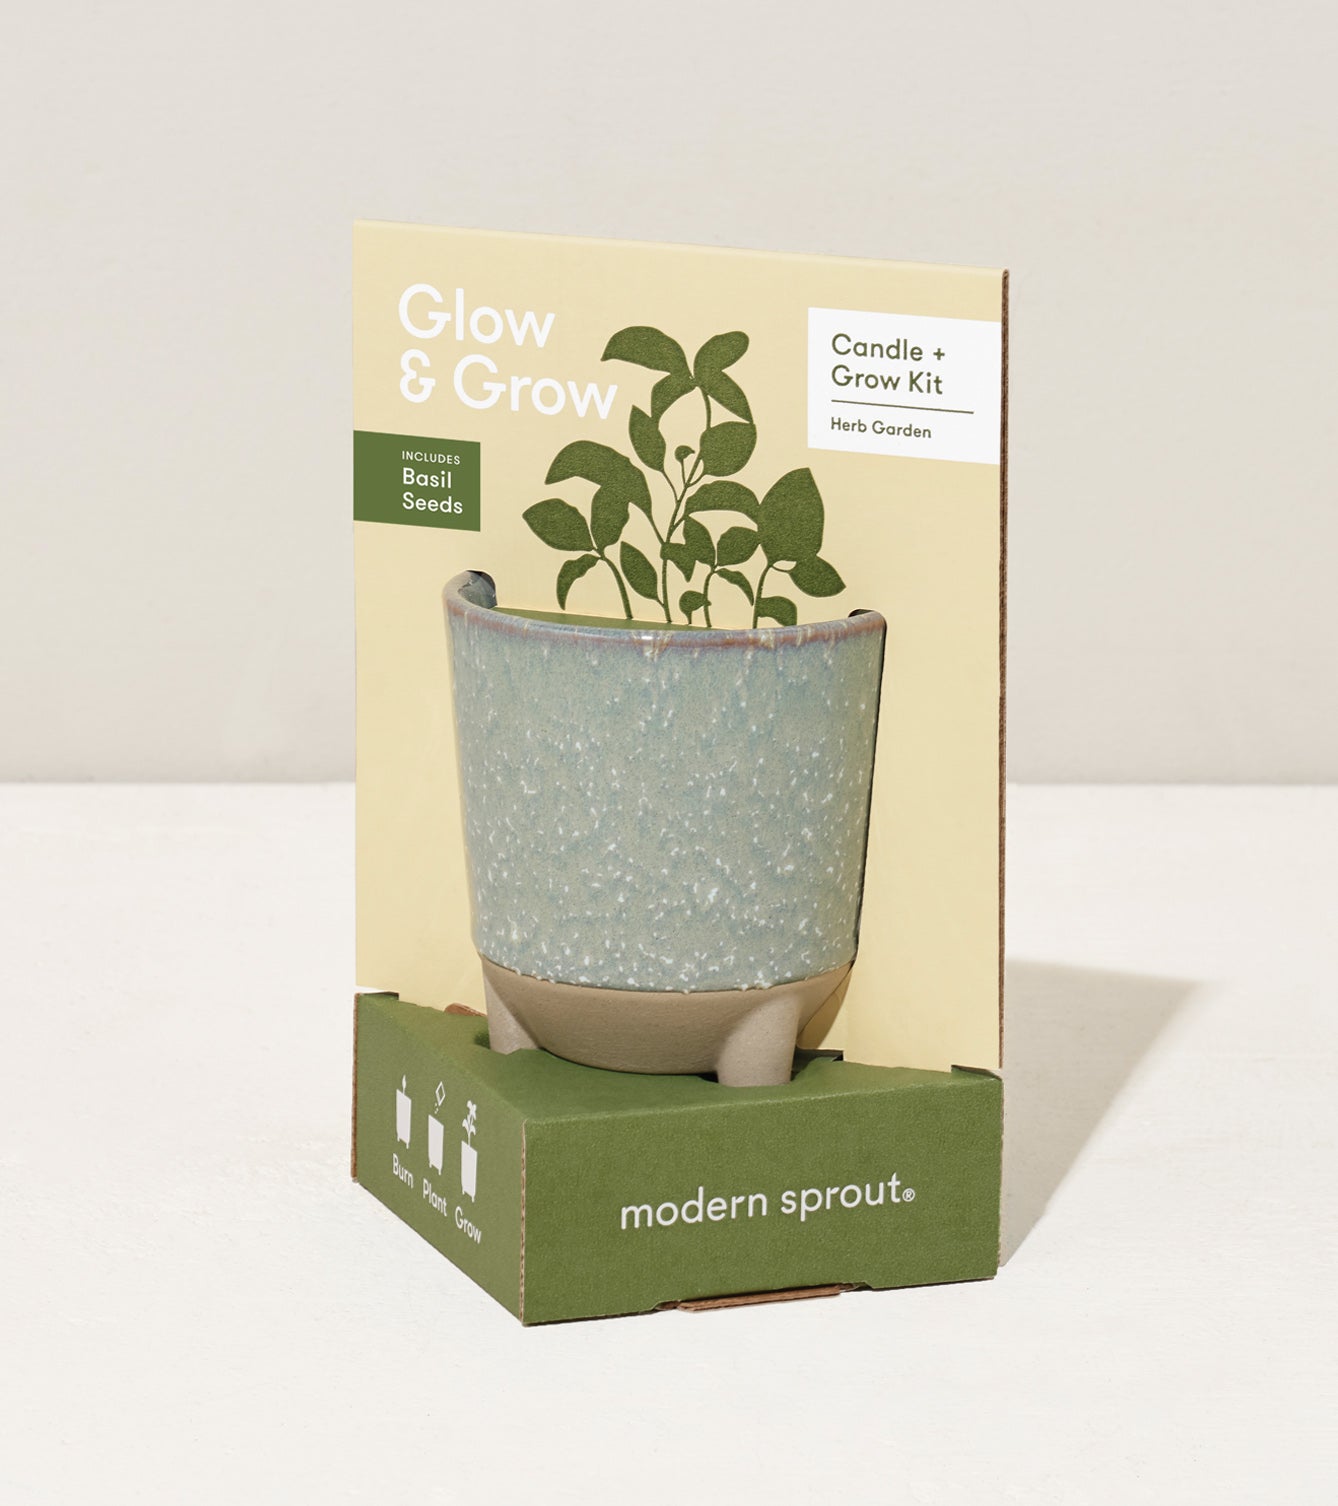 Glow & Grow Kits